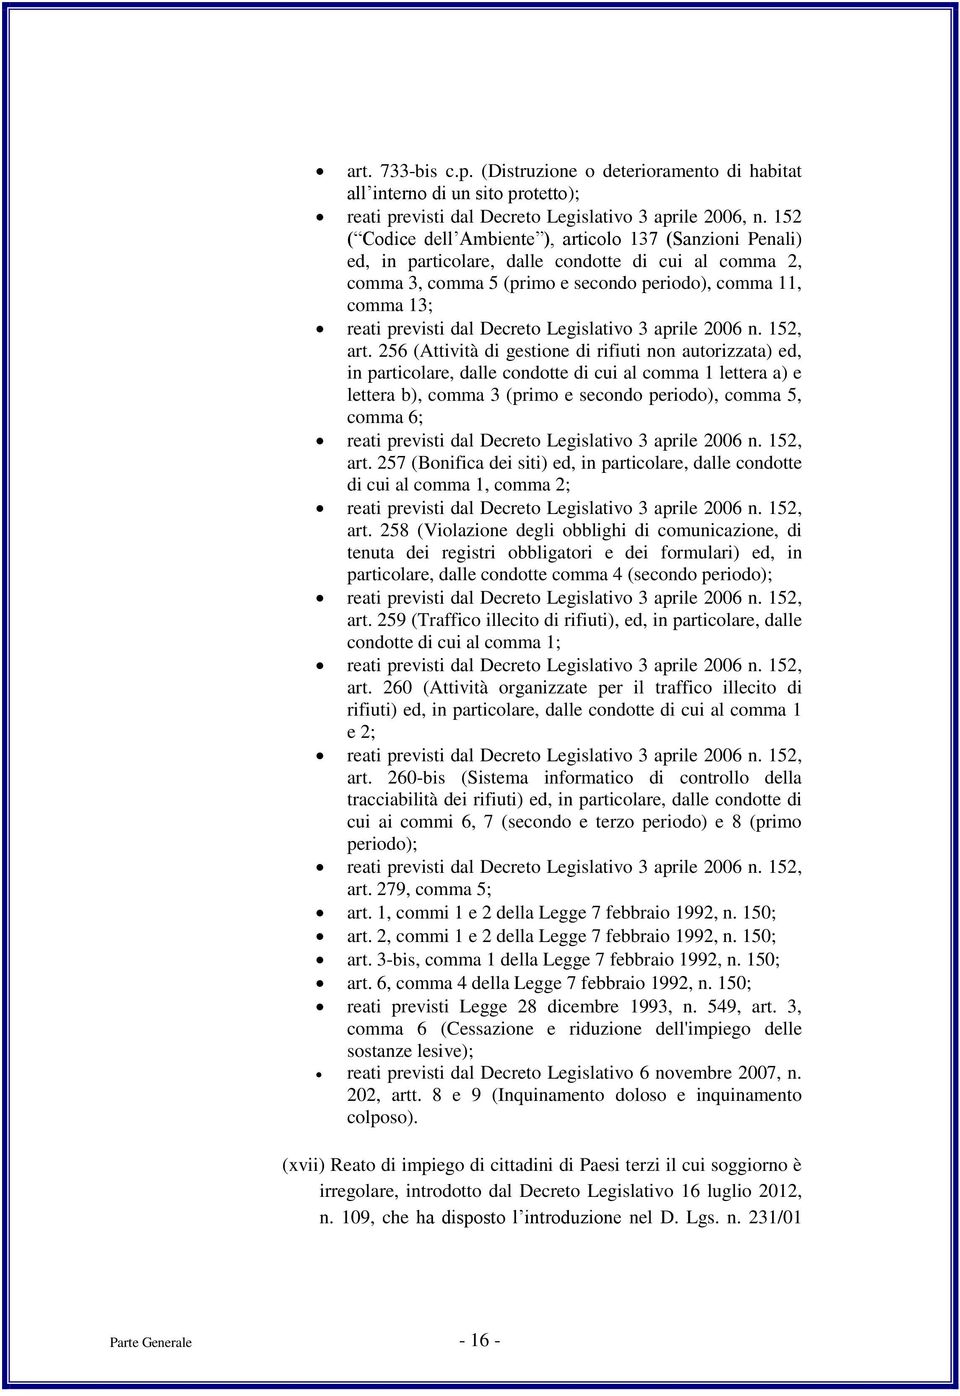 Decreto Legislativo 3 aprile 2006 n. 152, art.